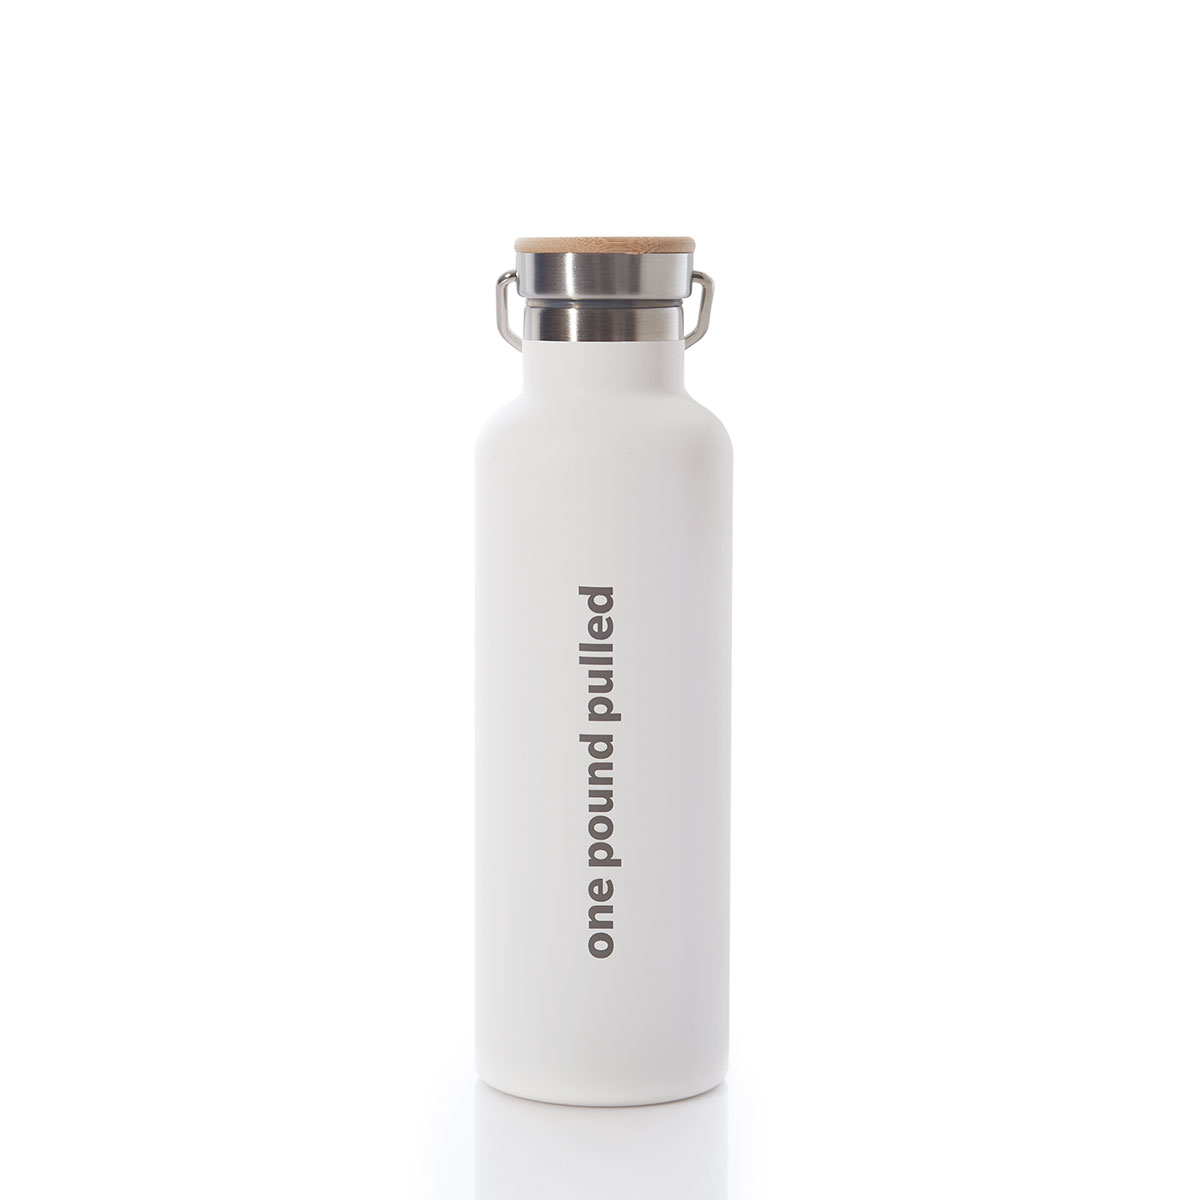 4ocean Reusable Water Bottle - White